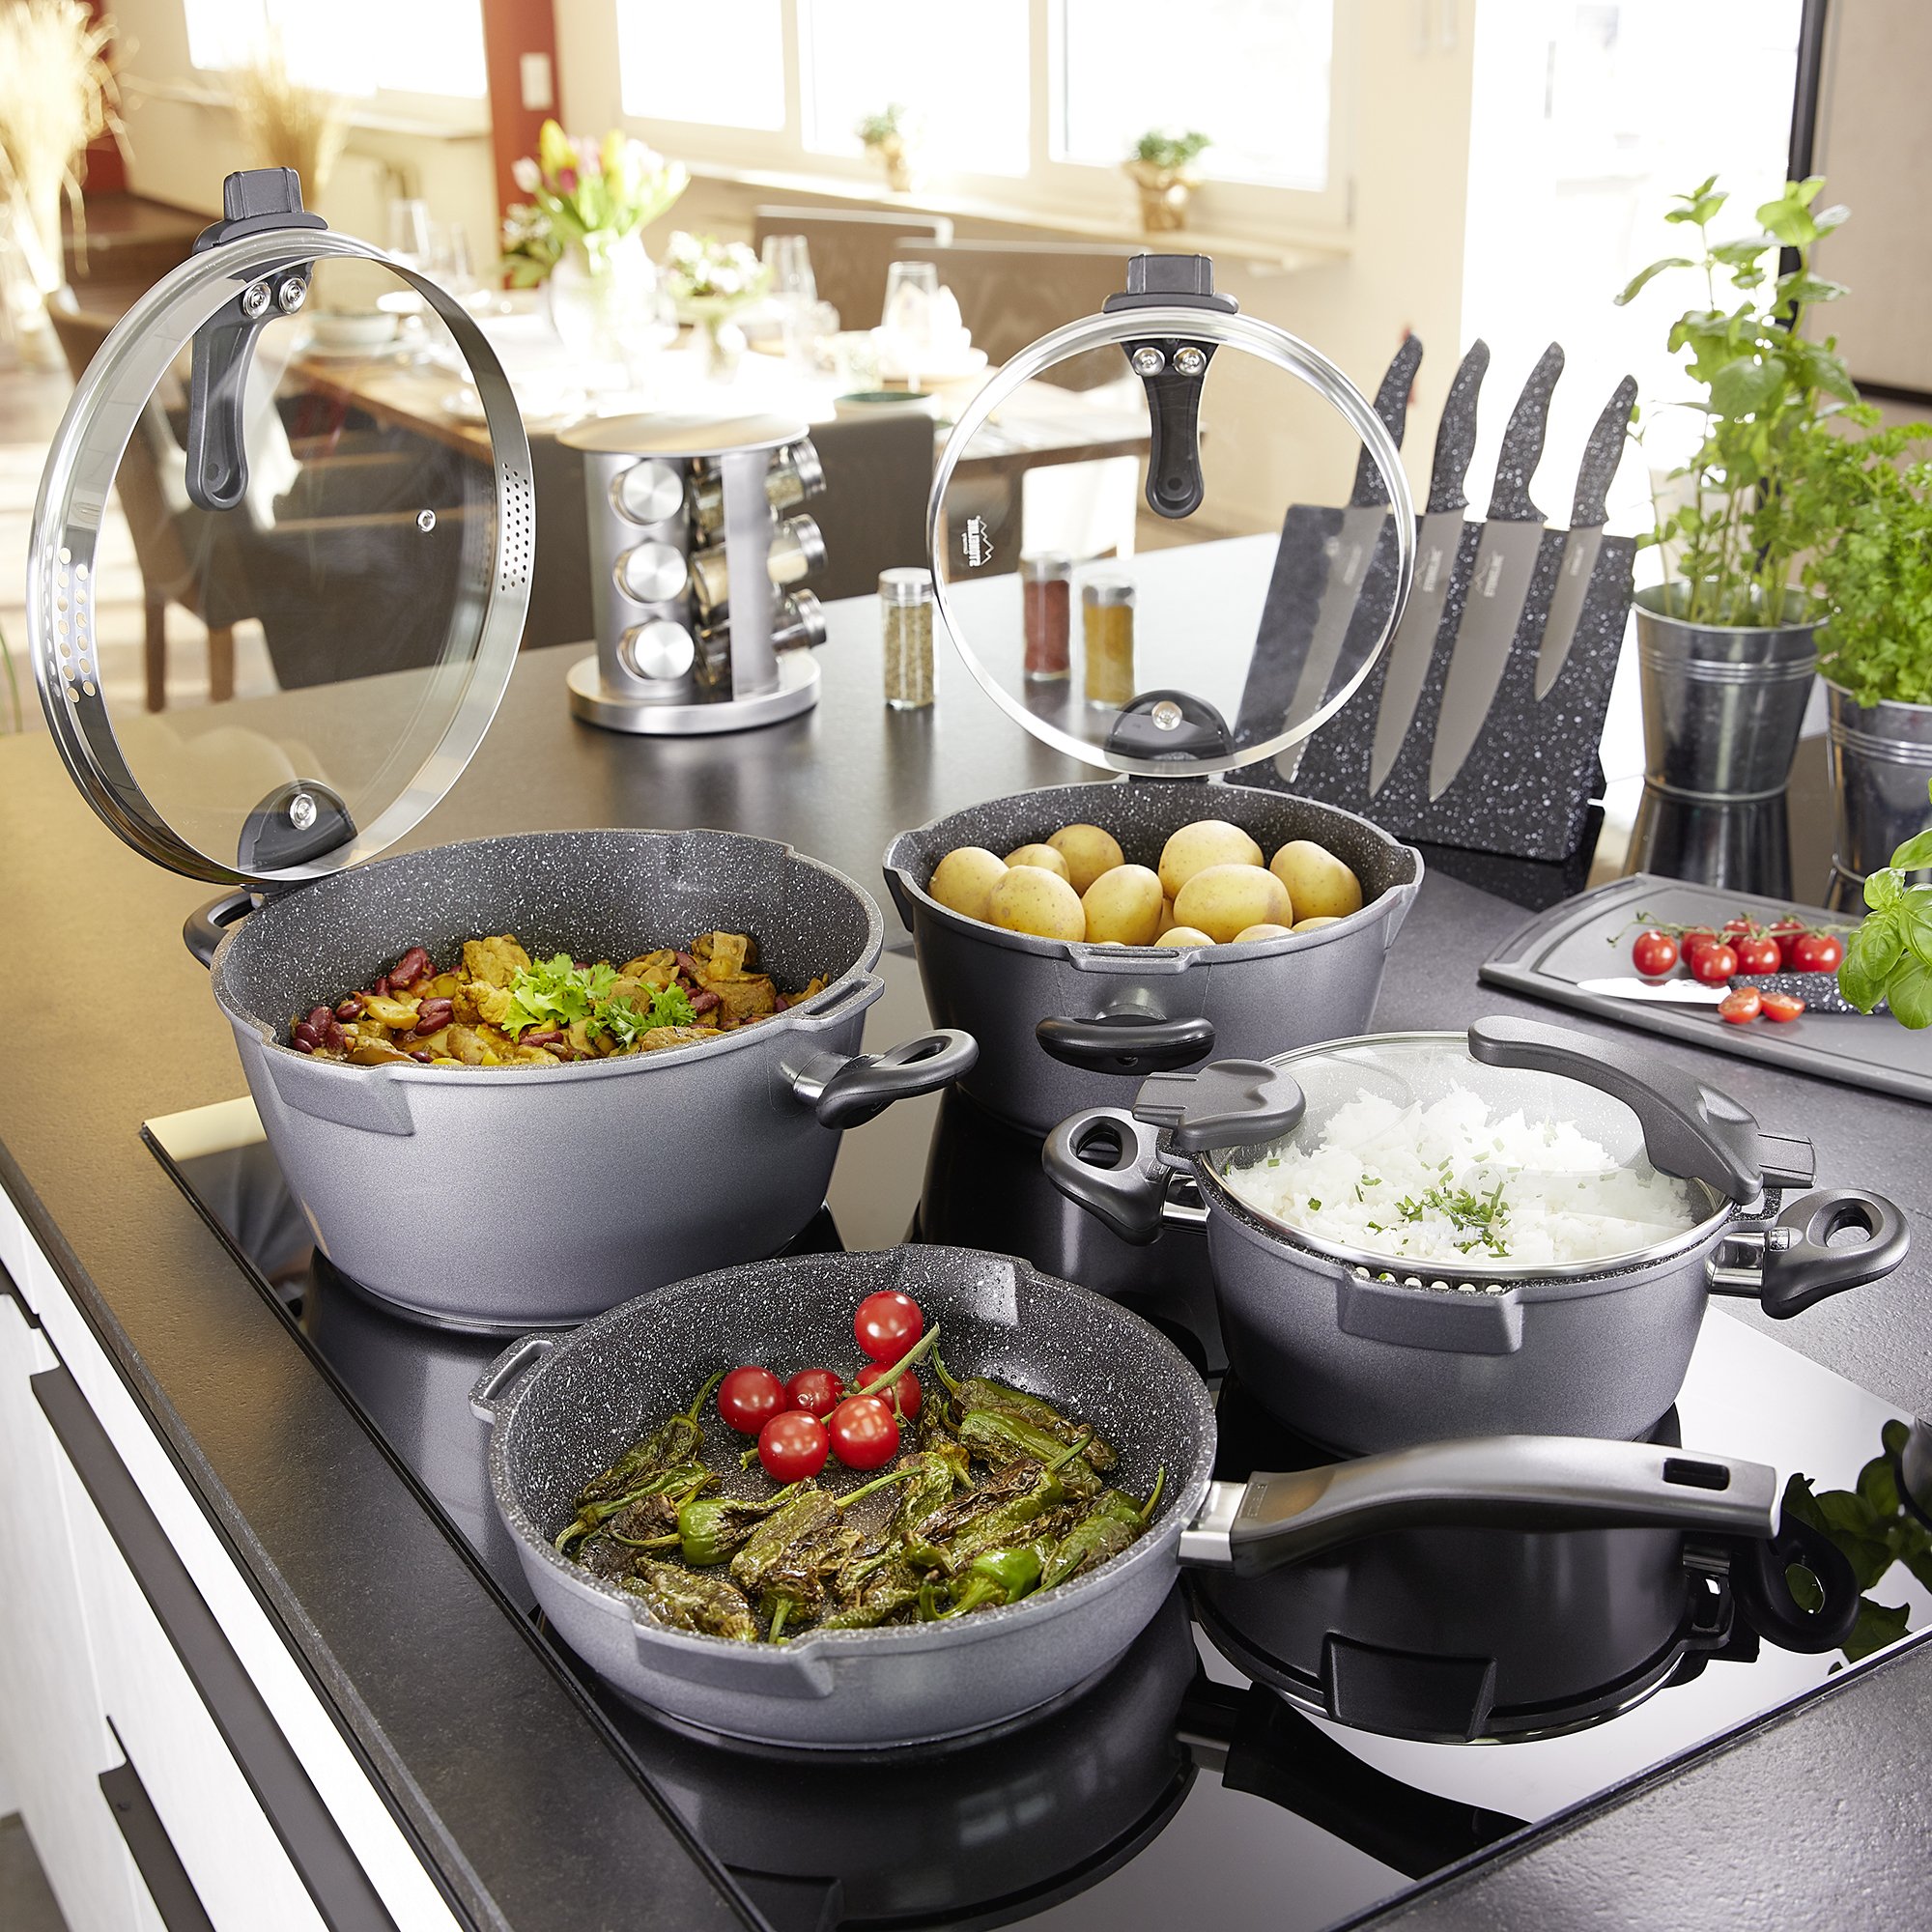 STONELINE® 8 pc Cookware Set, Strainer Lids, Spouts, Non-Stick Pots & Pans | FUTURE